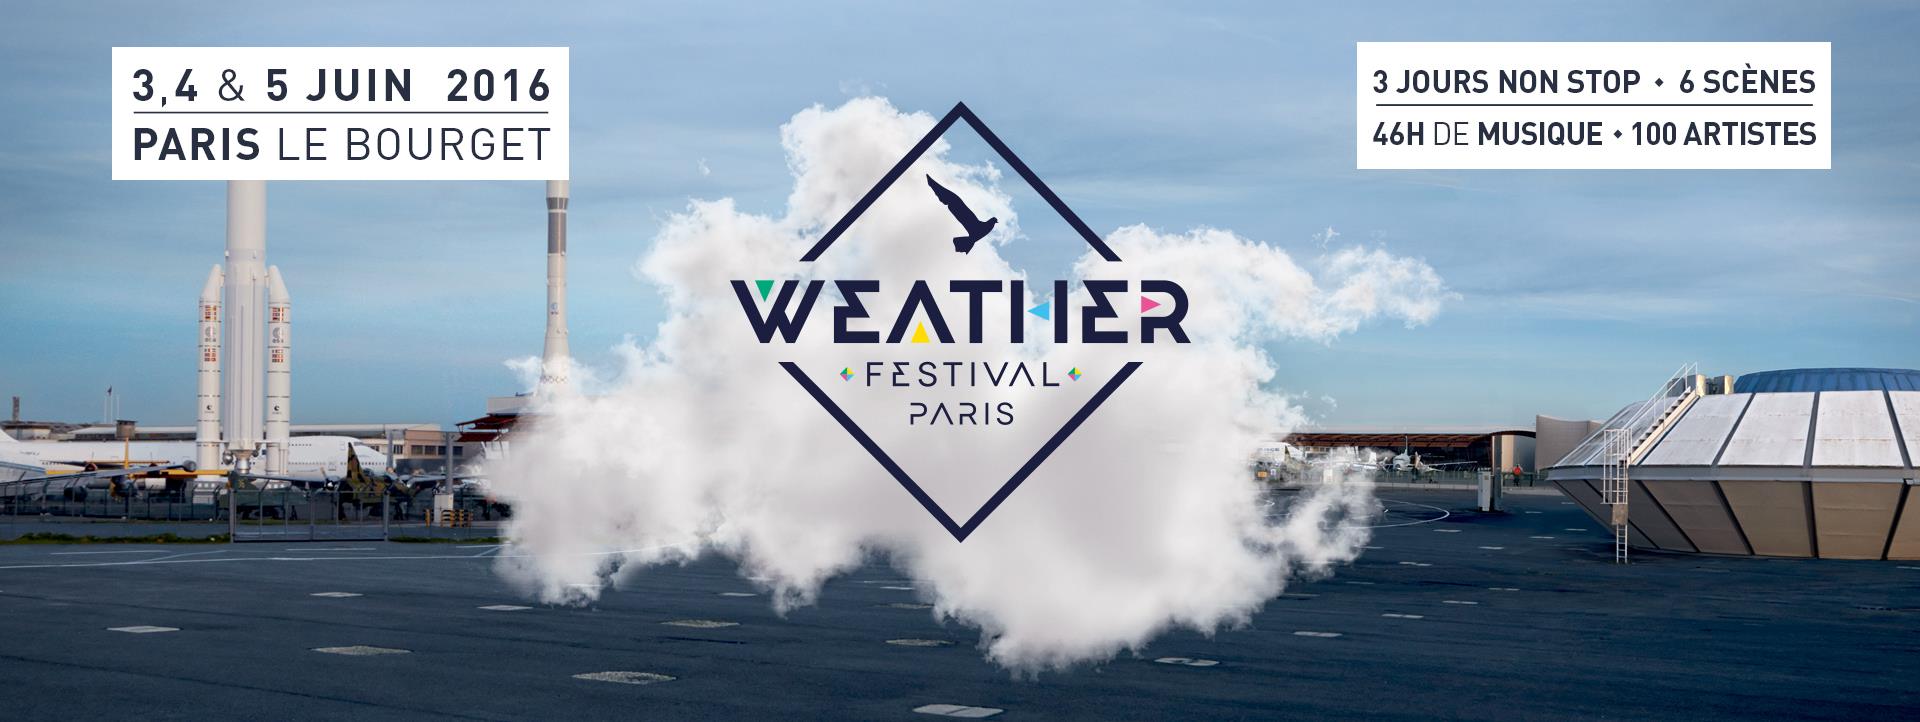 weather Weather Weather, ton festival est bientôt là !